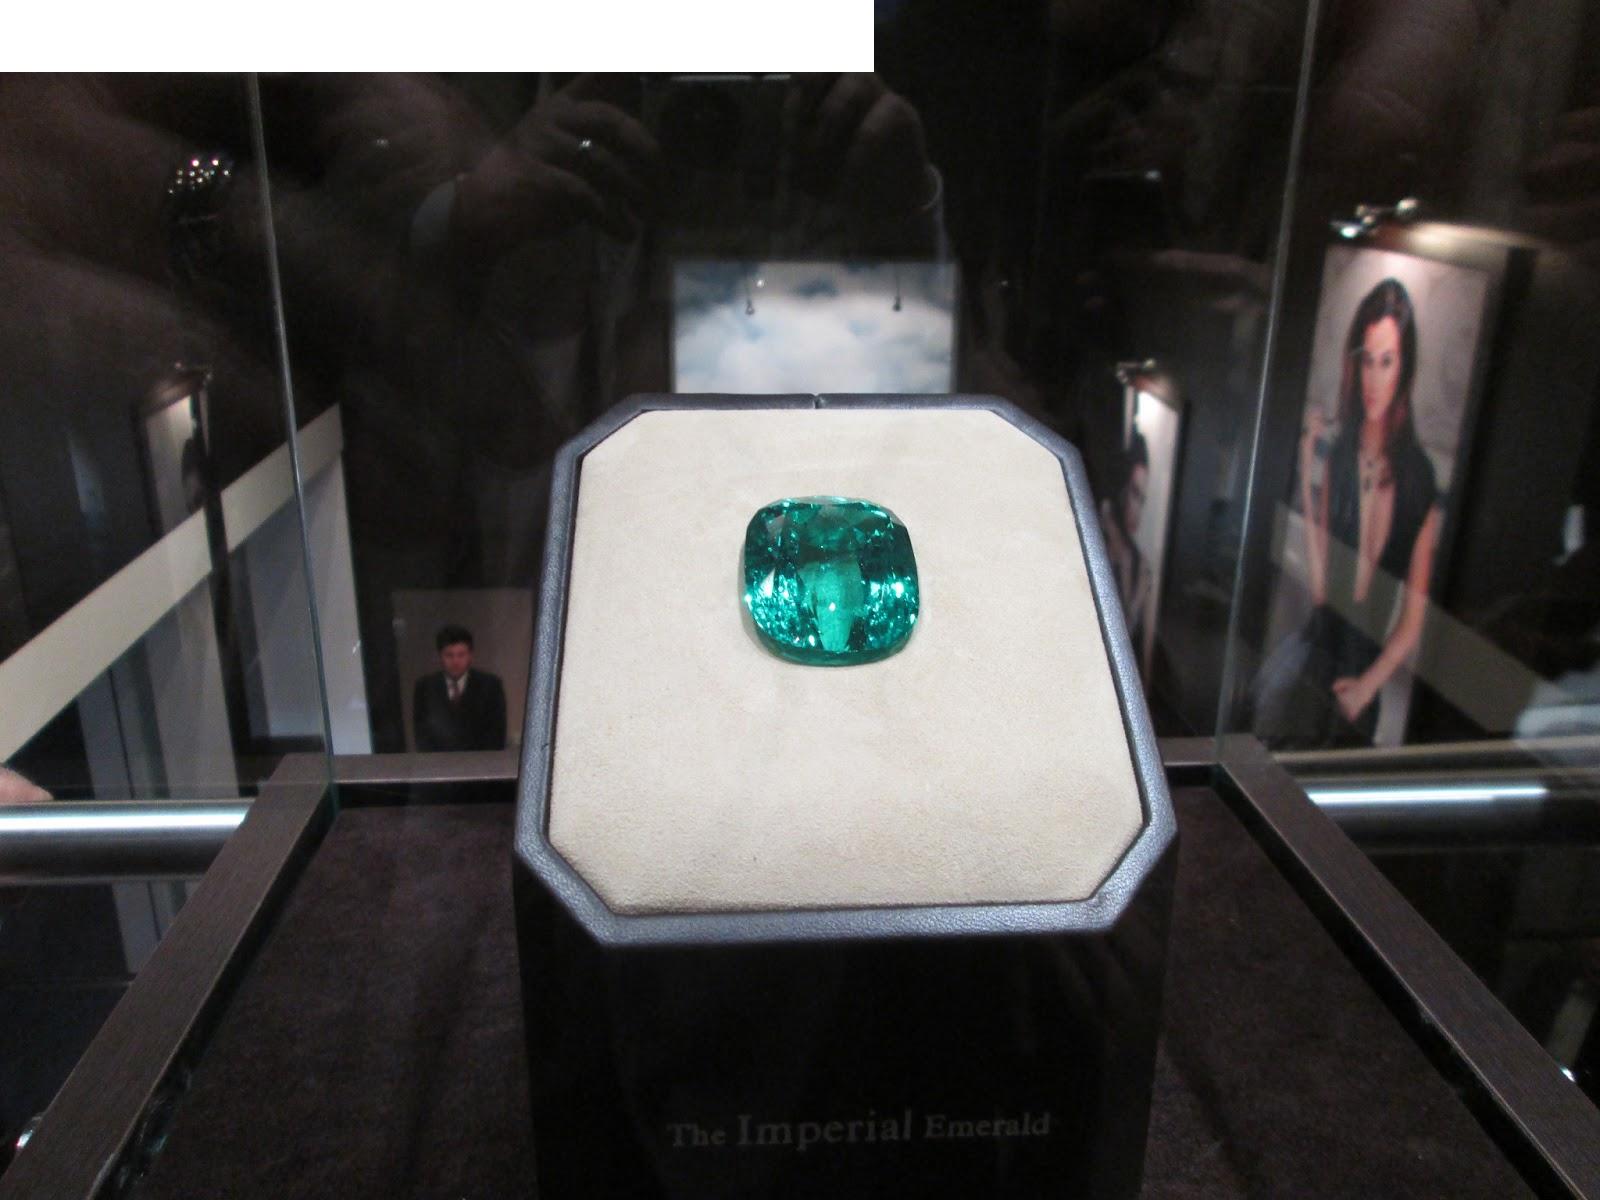 "Imperial Emerald" sa 206 carats